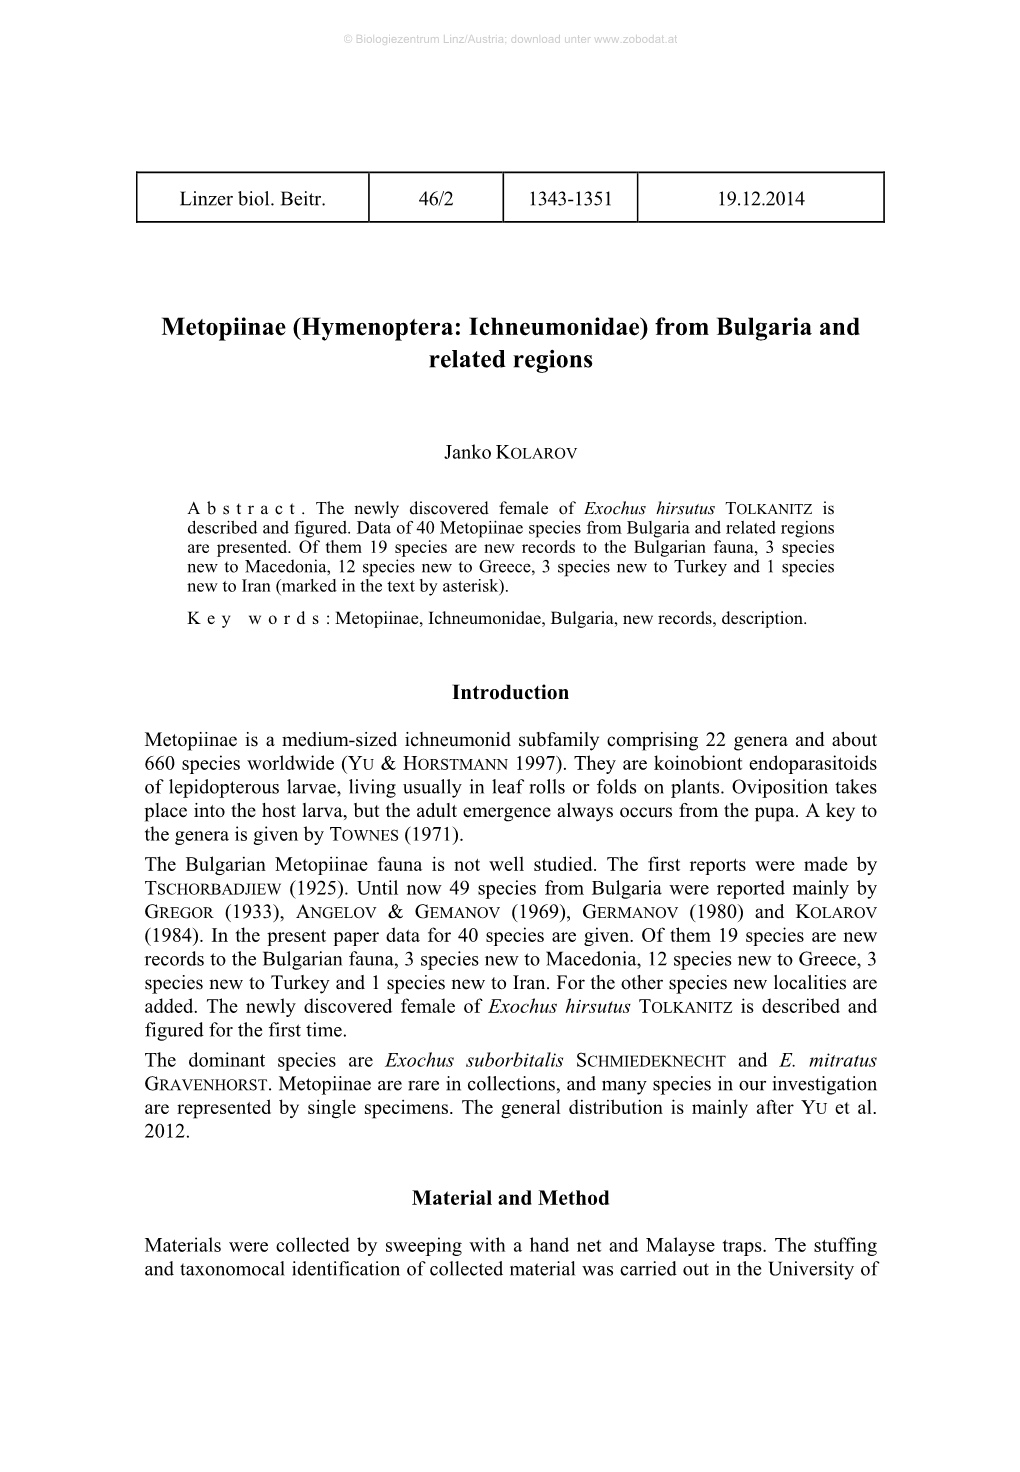 Metopiinae (Hymenoptera: Ichneumonidae) from Bulgaria and Related Regions